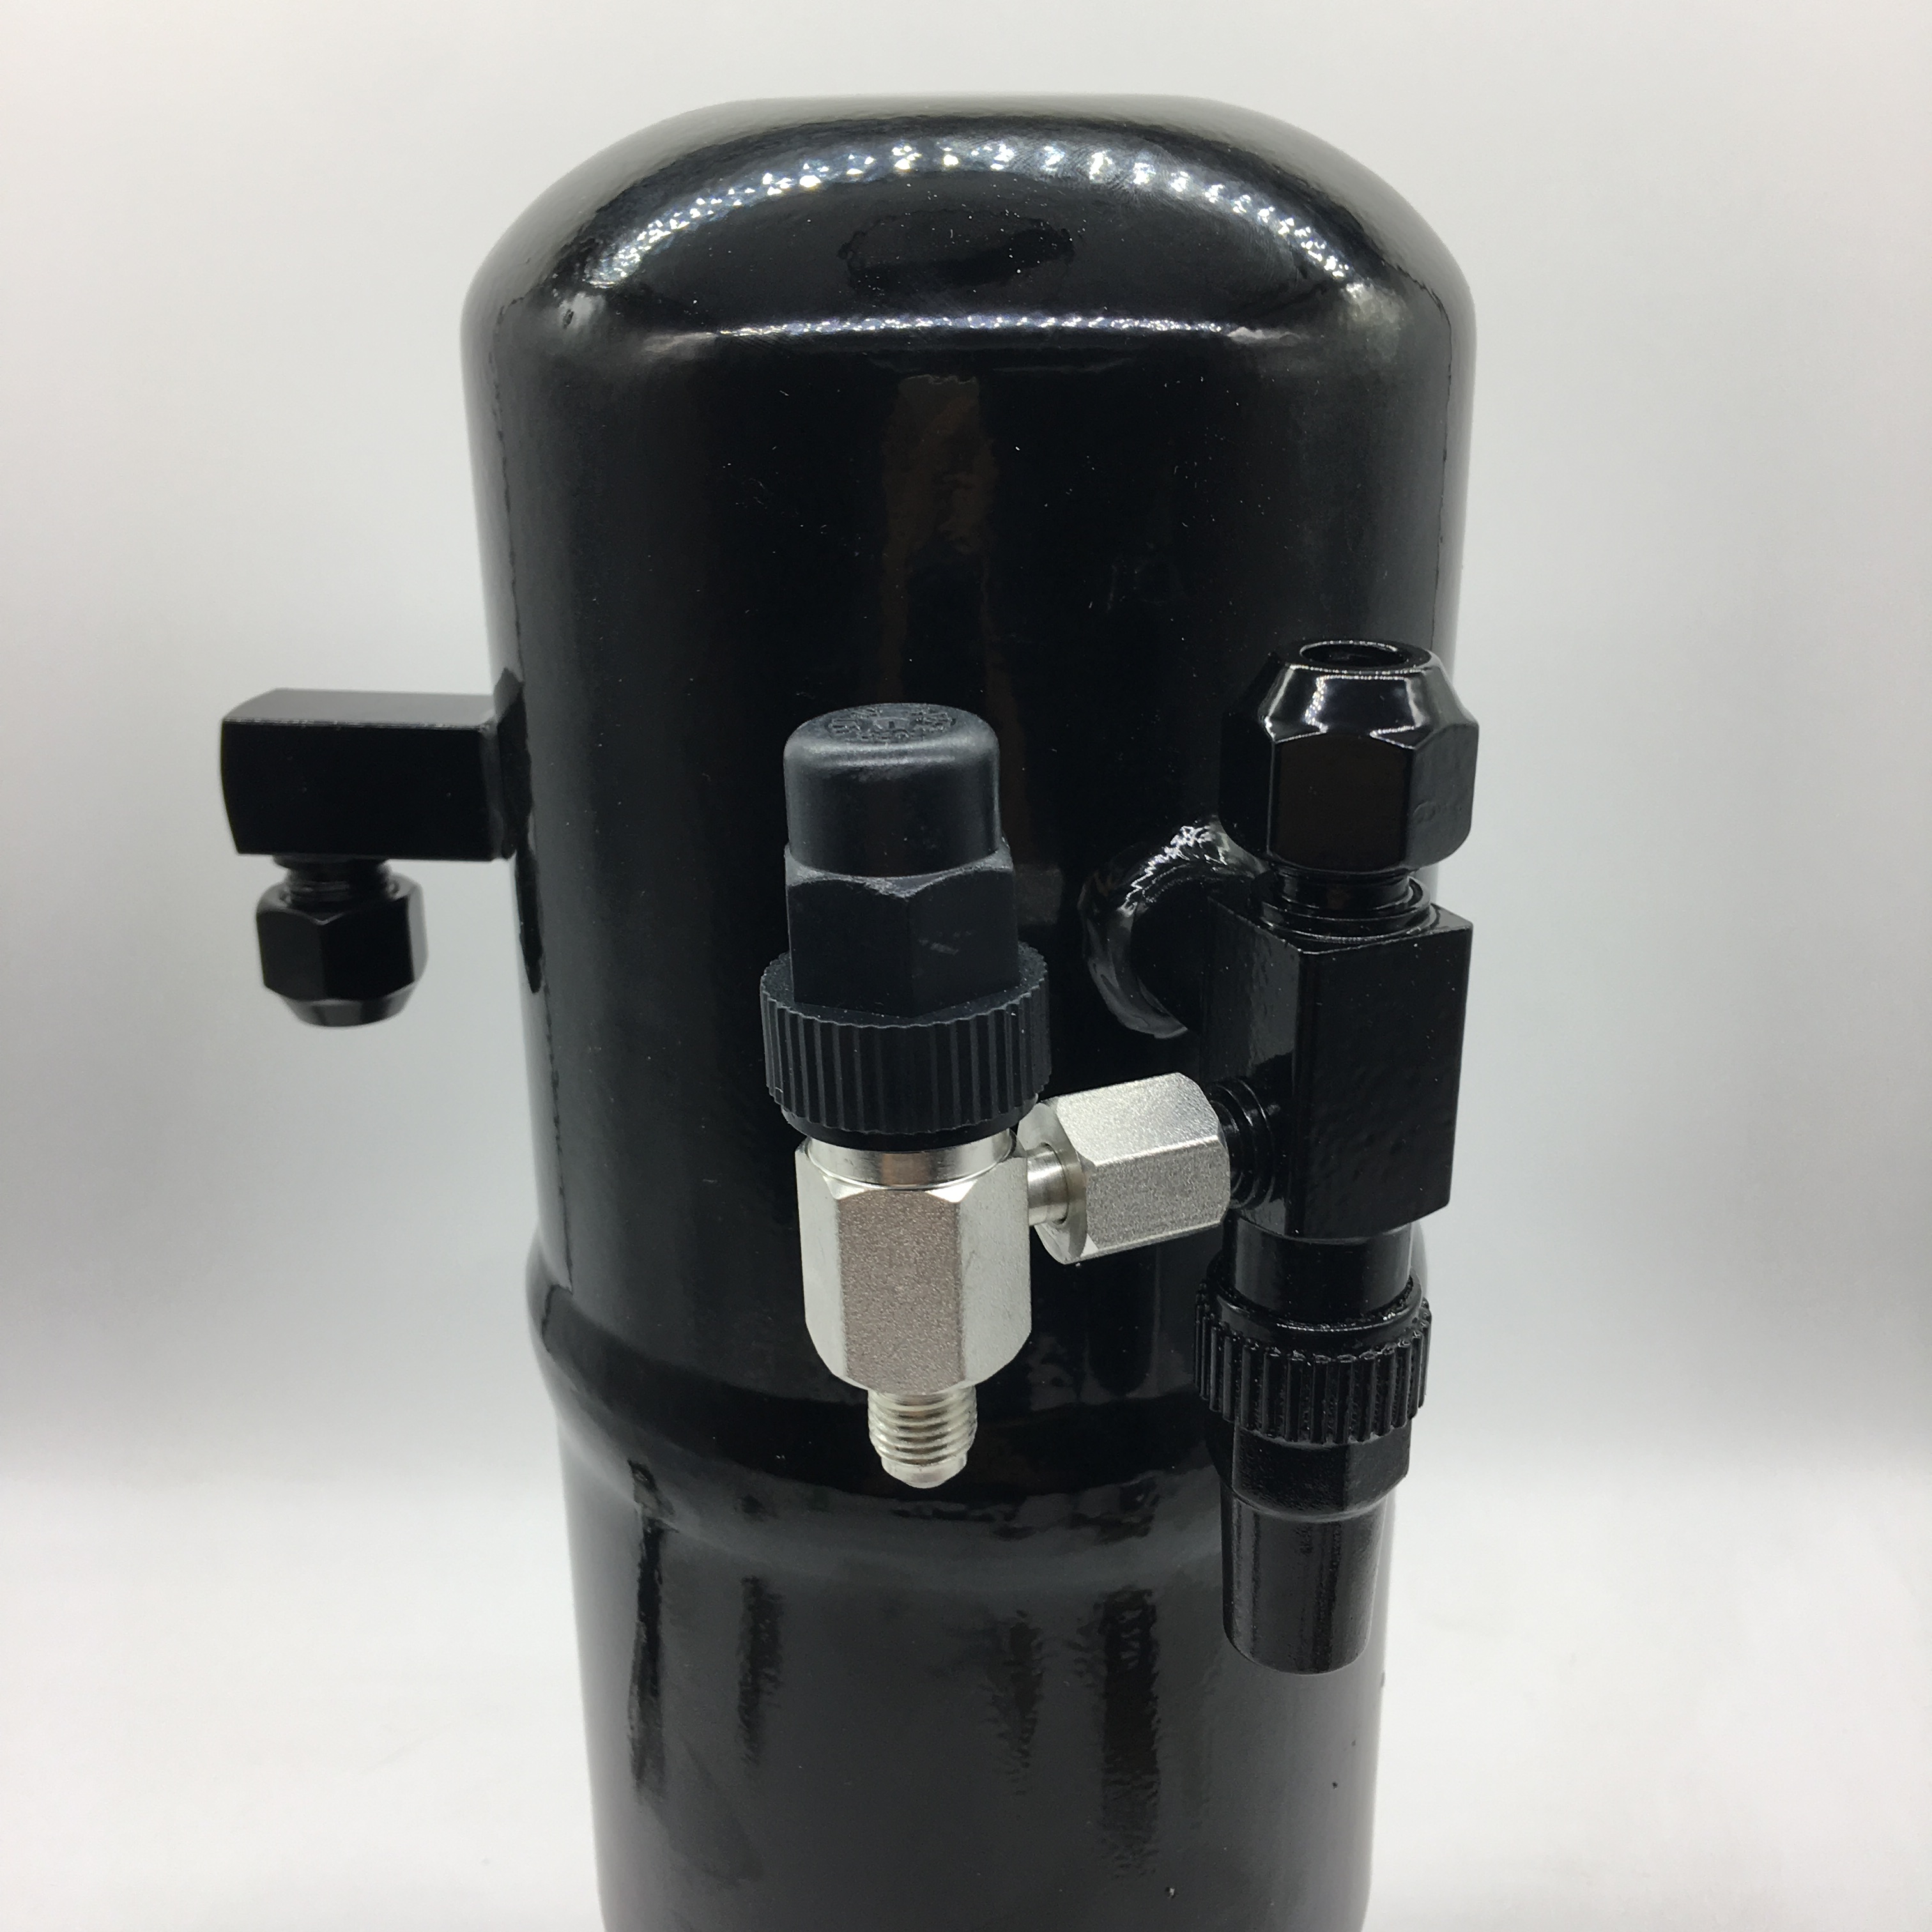 Vandret rotalock-afspærringsventil arbejder sammen med vinkelventil, der giver adgang til flere funktioner i køleenheden